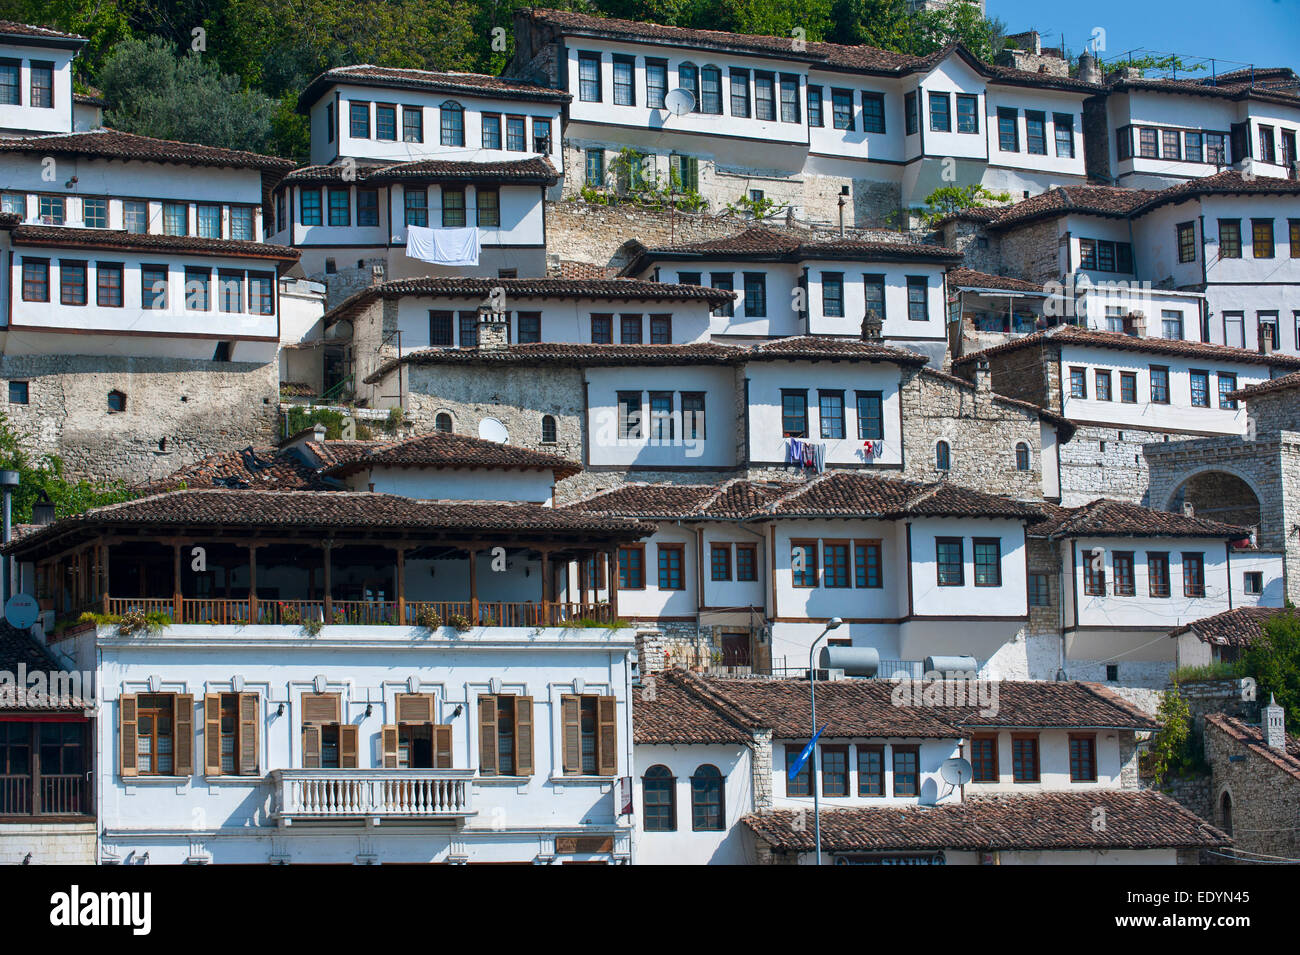 Traditionelle Häuser in der Mangalemviertel Quartal, UNESCO-Weltkulturerbe, Berat, Albanien Stockfoto